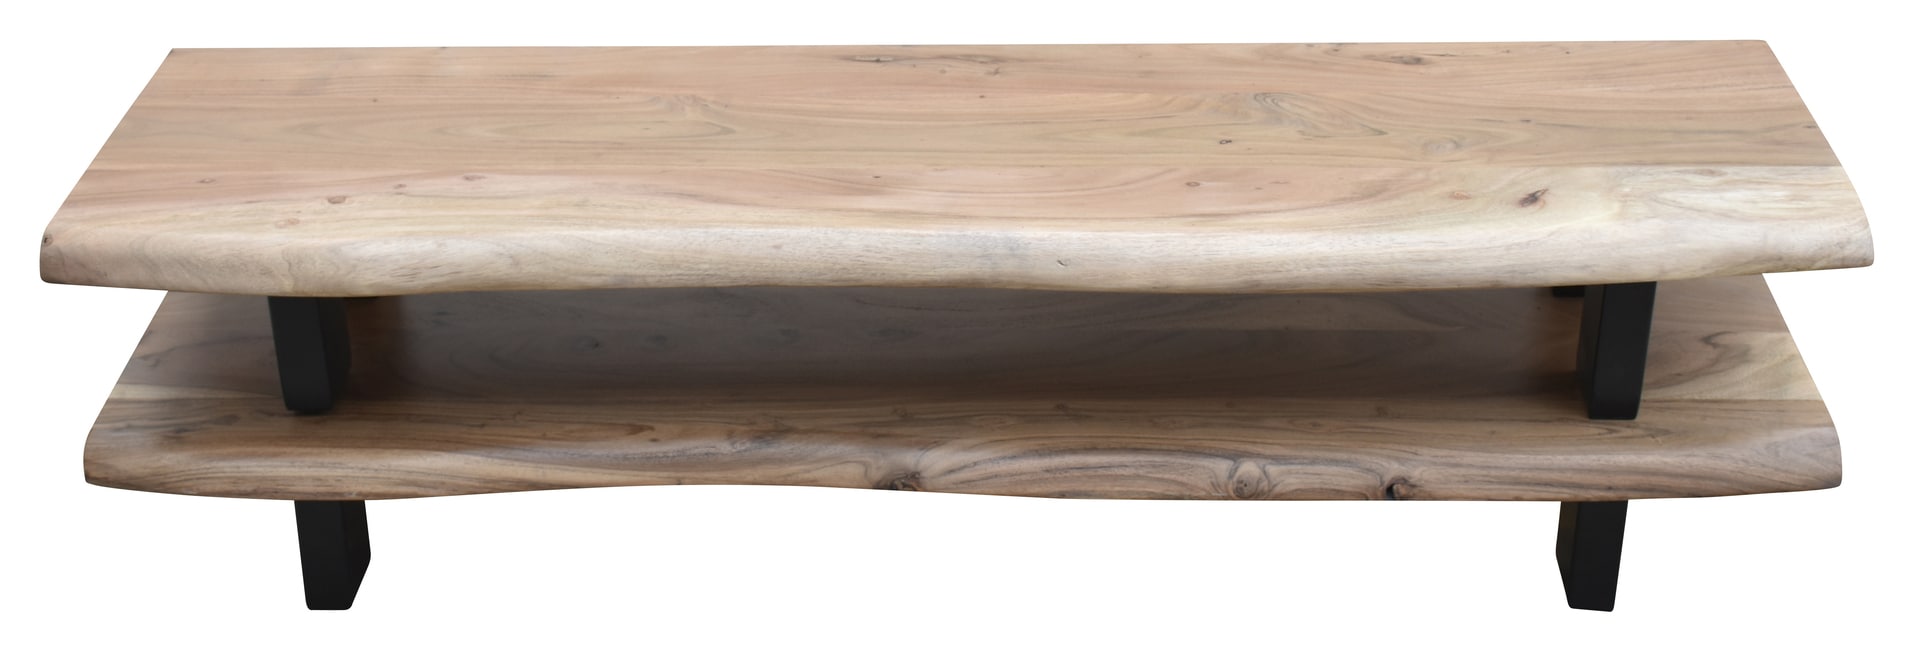 Lowboard 140 x 36 cm Akazie mit Baumkante natur/schwarz